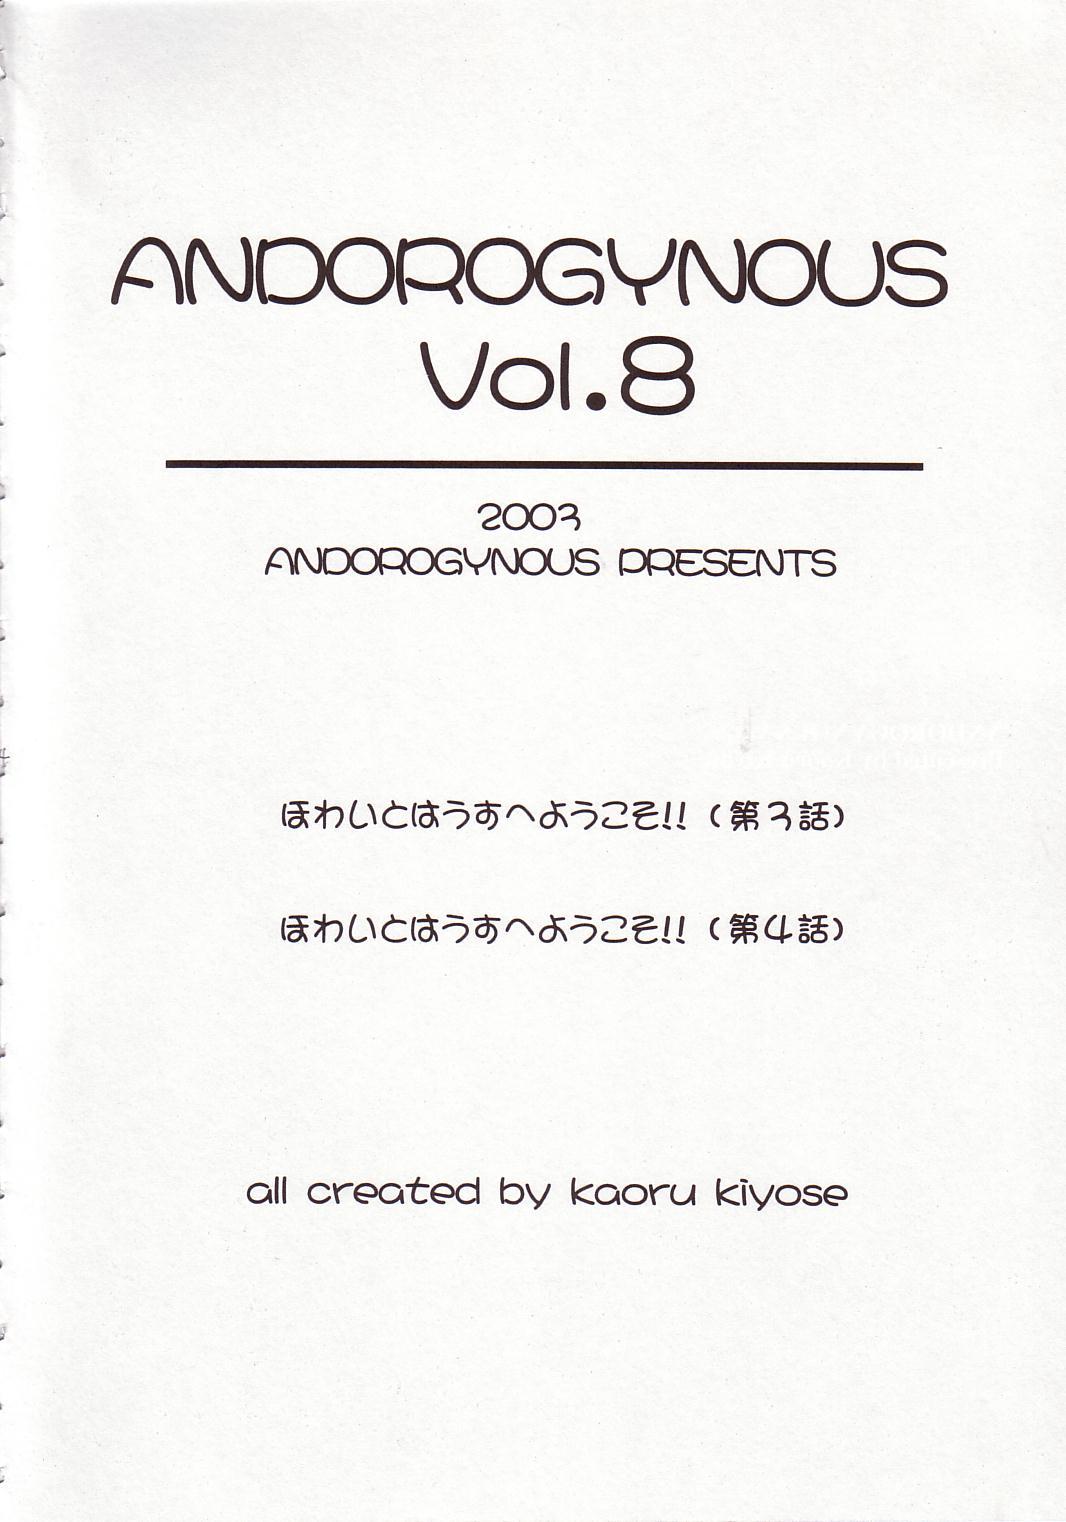 Andorogynous Vol. 8 2